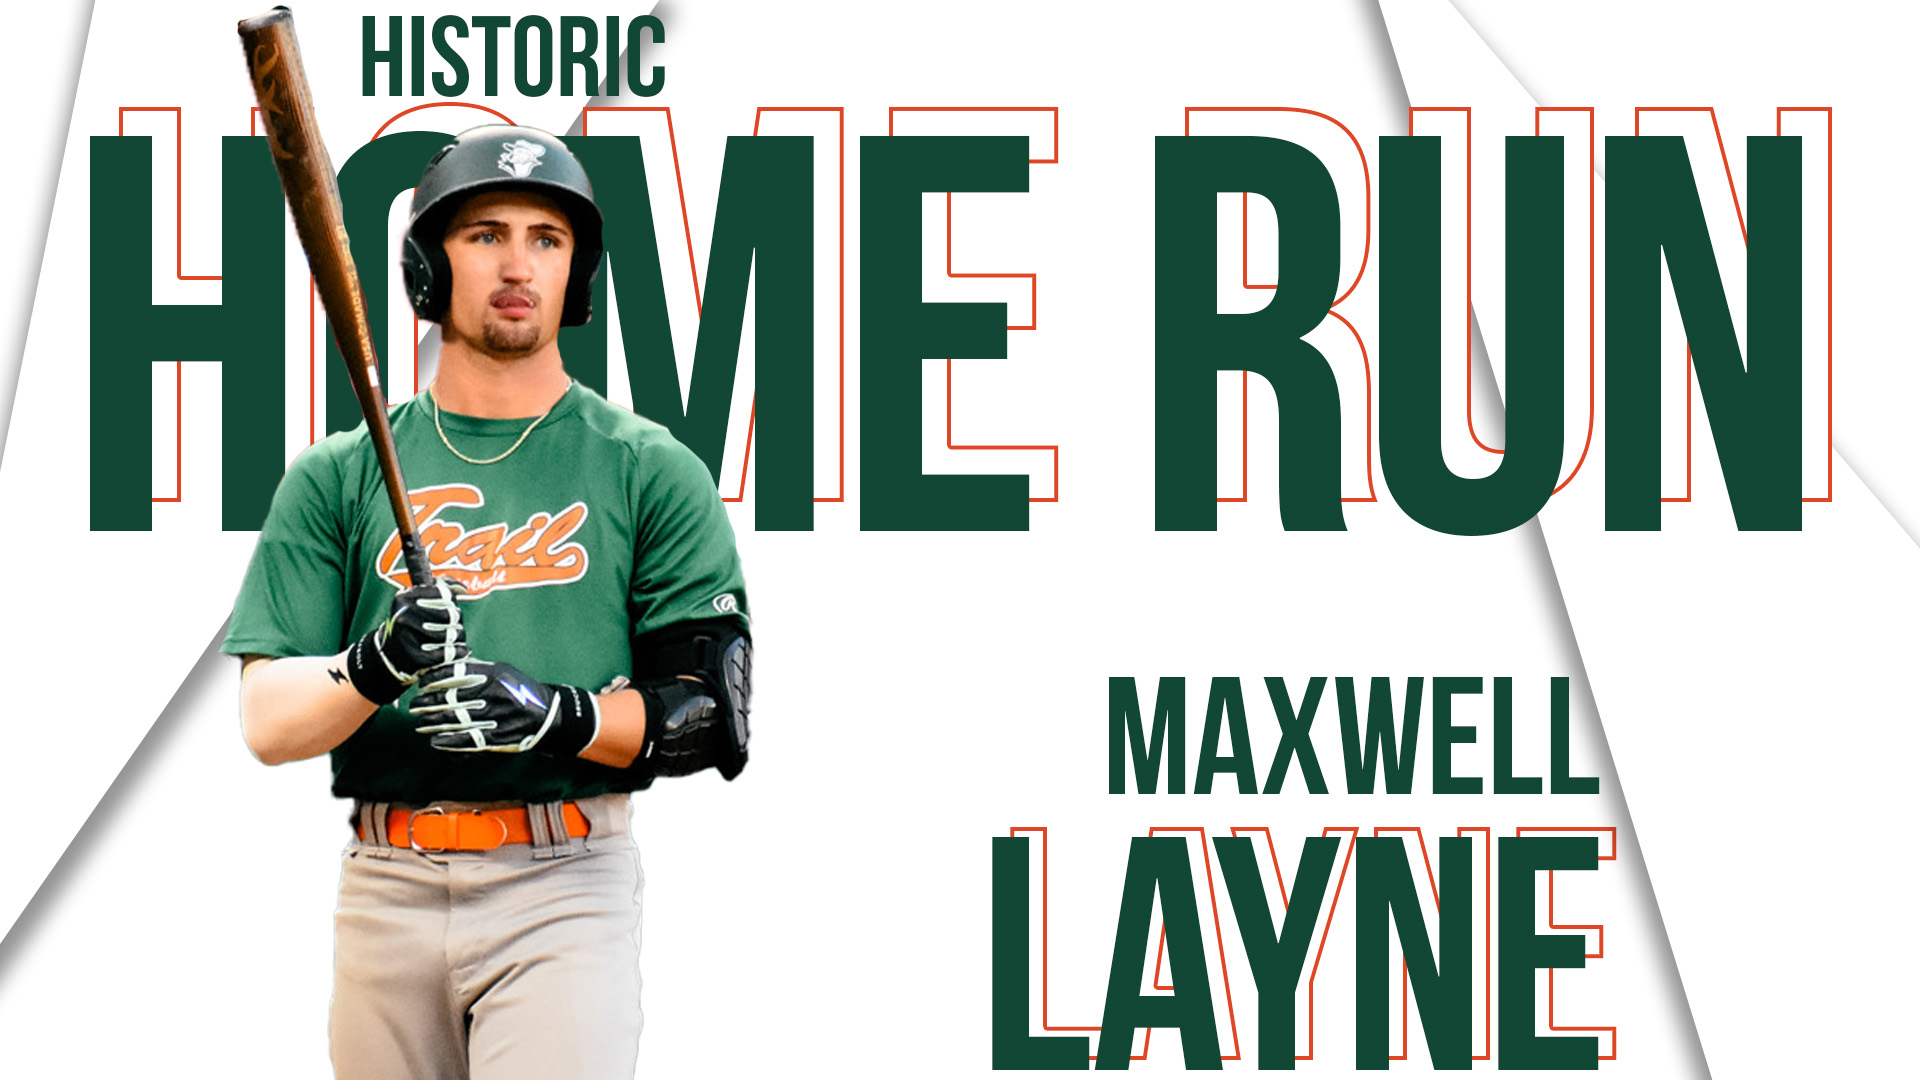 Layne Hits an Unforgettable Home Run